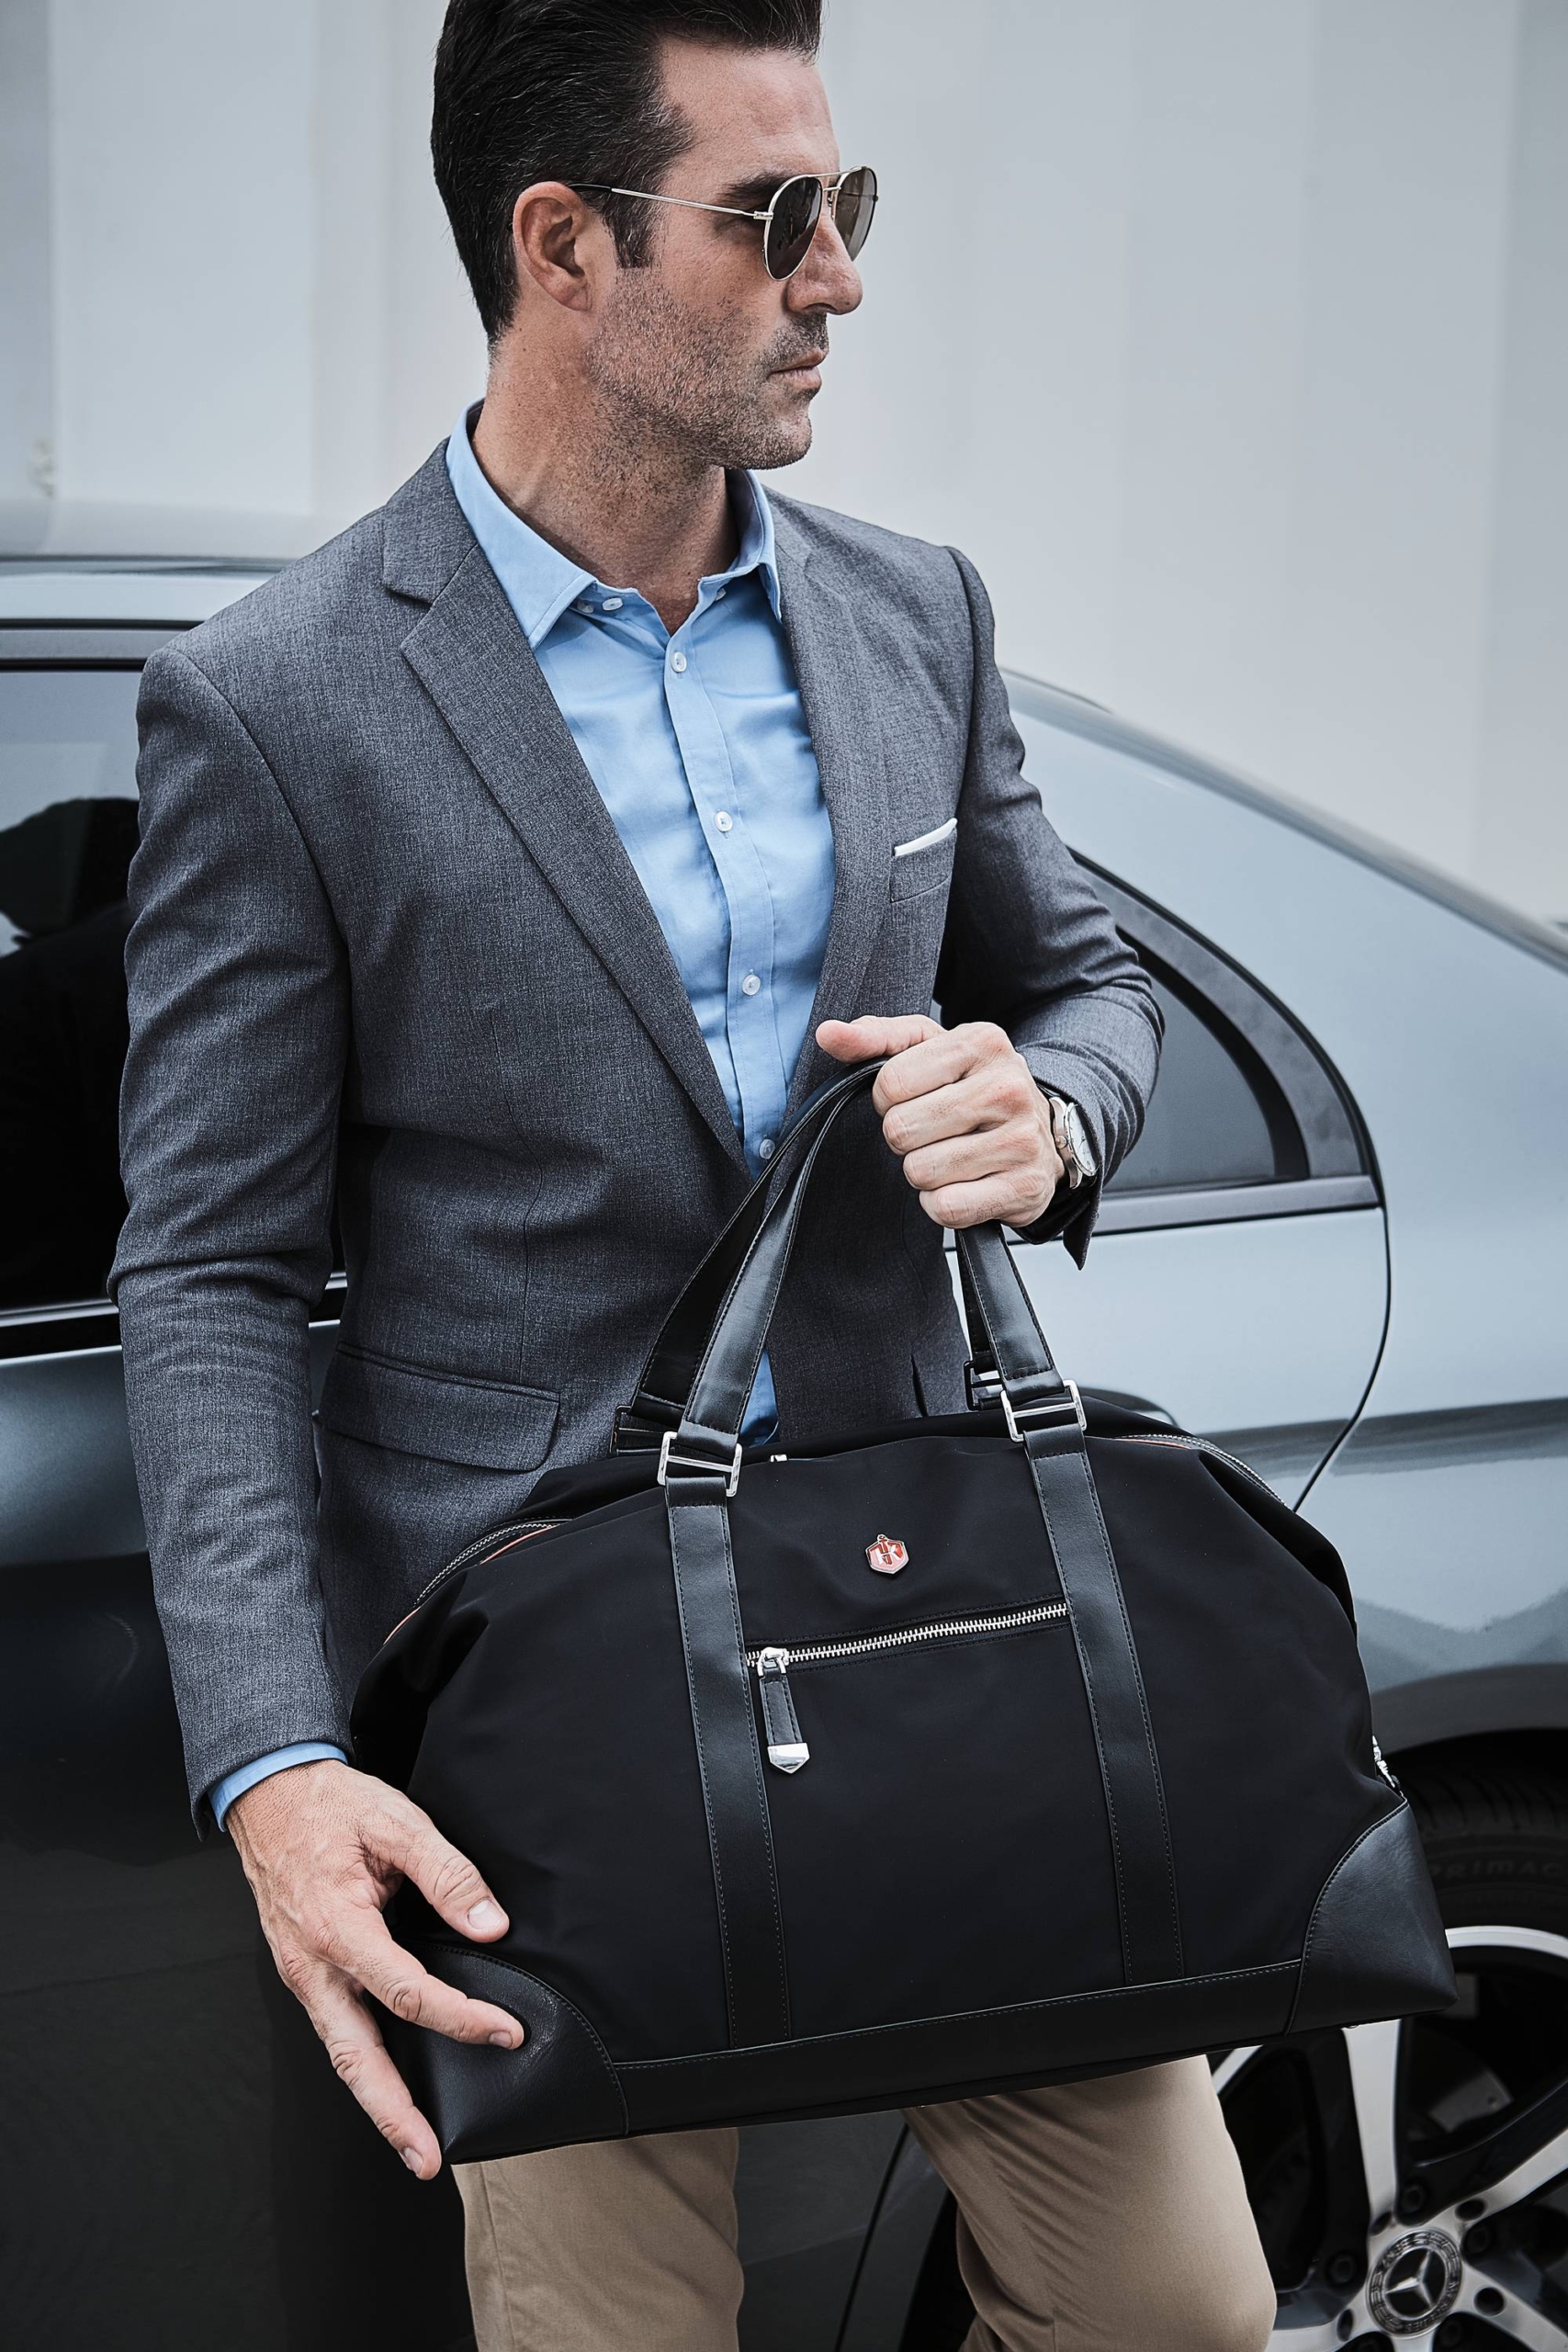 Business Duffel Bag  Black Duffel Bag — Krimcode